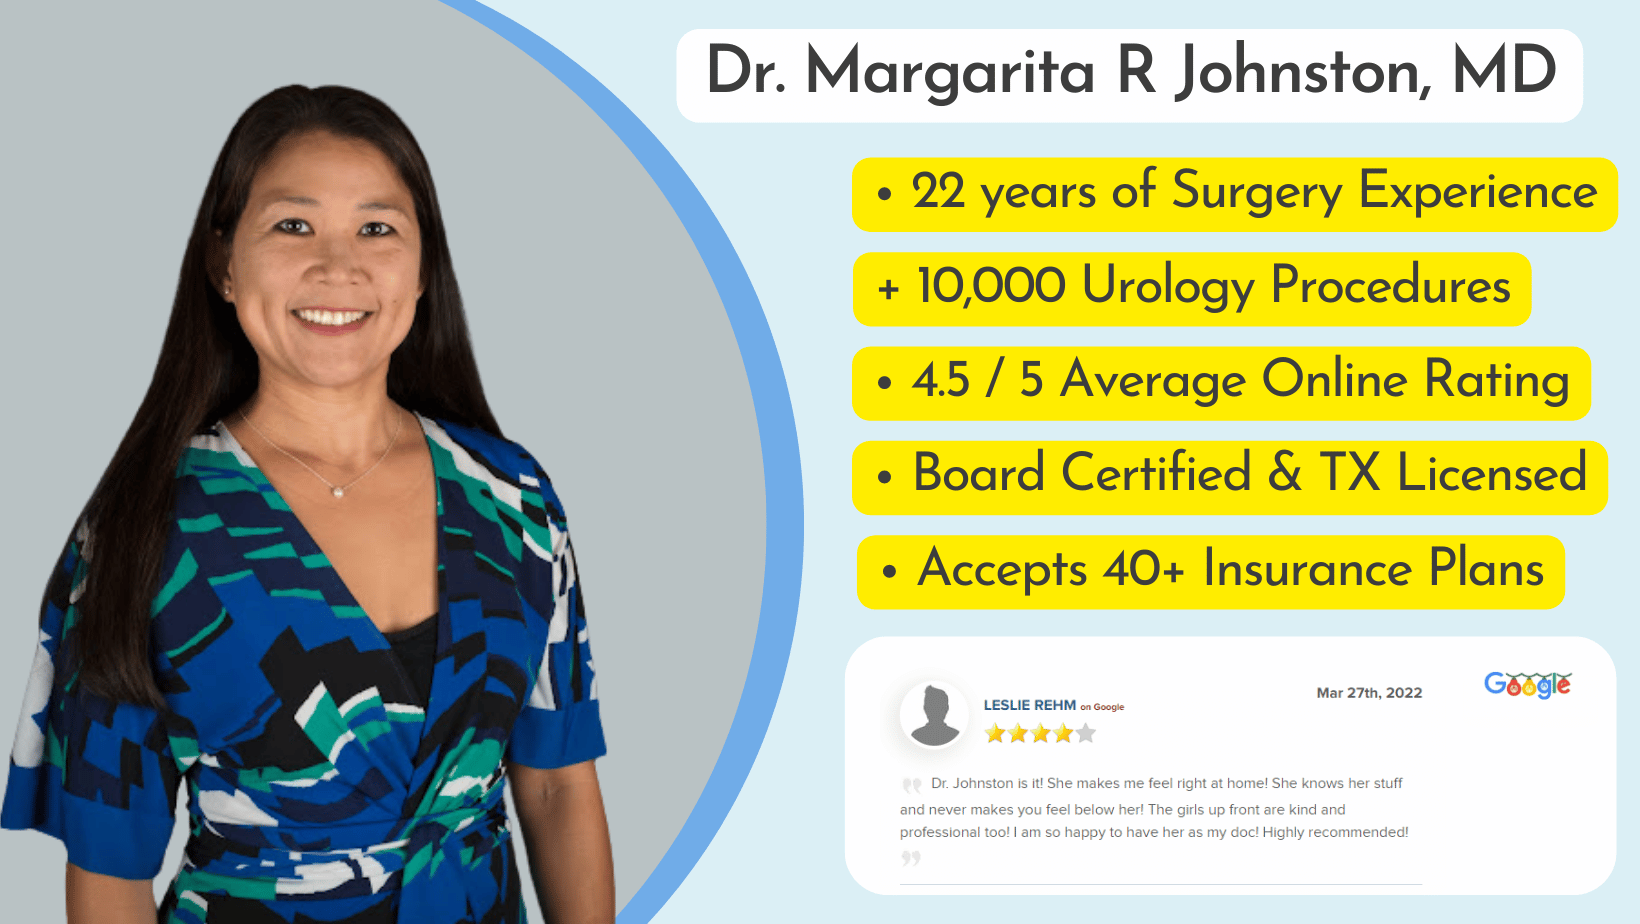 Dr. Margarita R Johnston